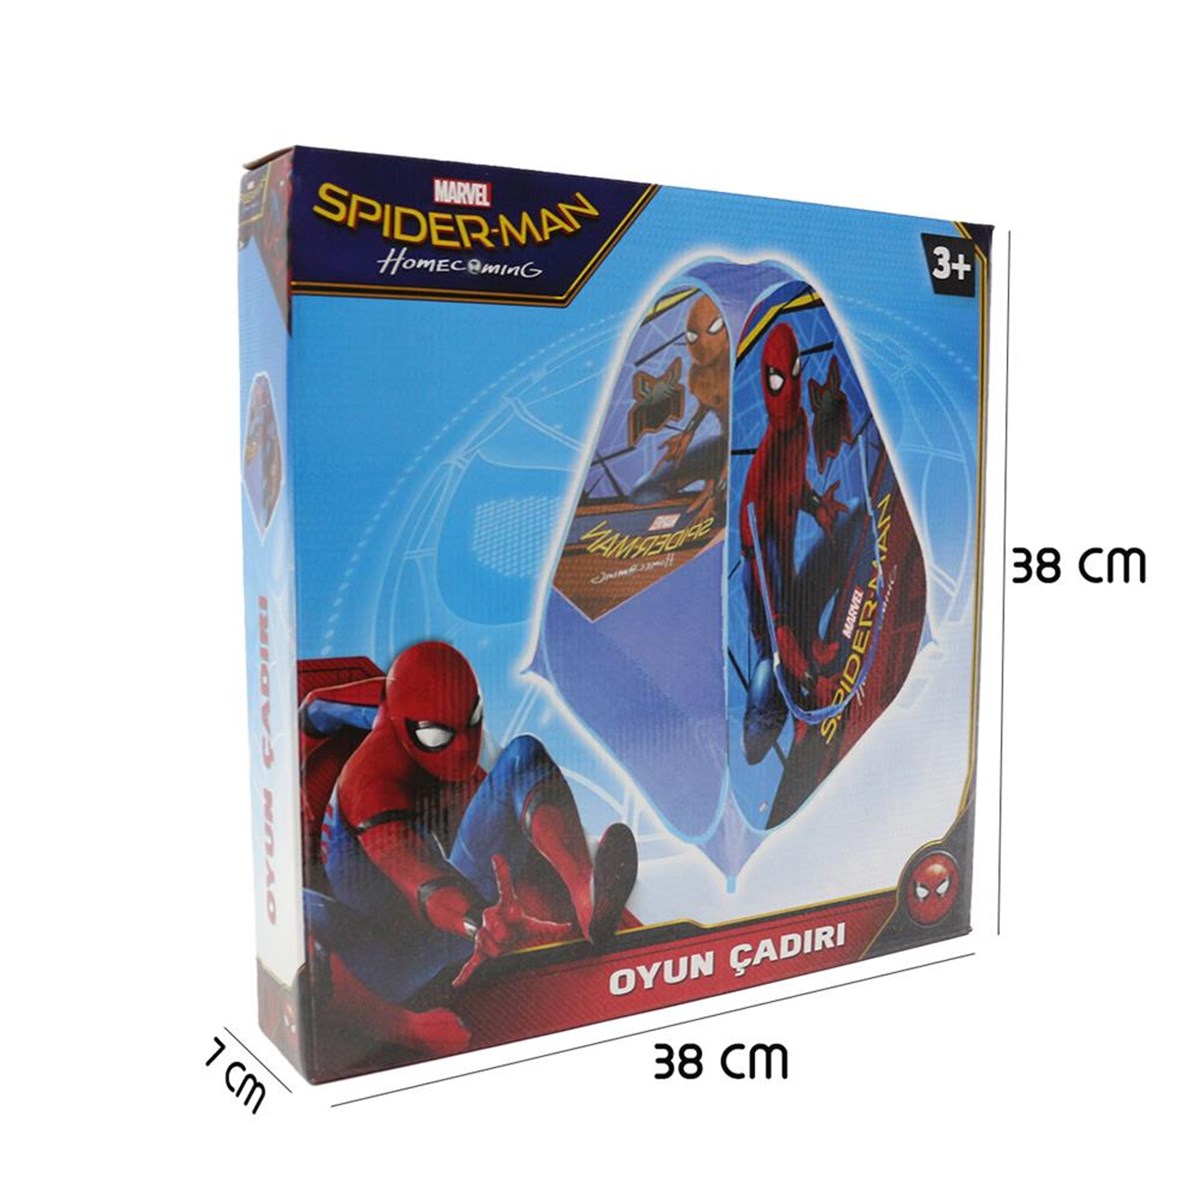 Spiderman Oyun Çadırı Kolay Kurulum 95x95x100, Alışverişin Adresi'nde |  Shopiglo